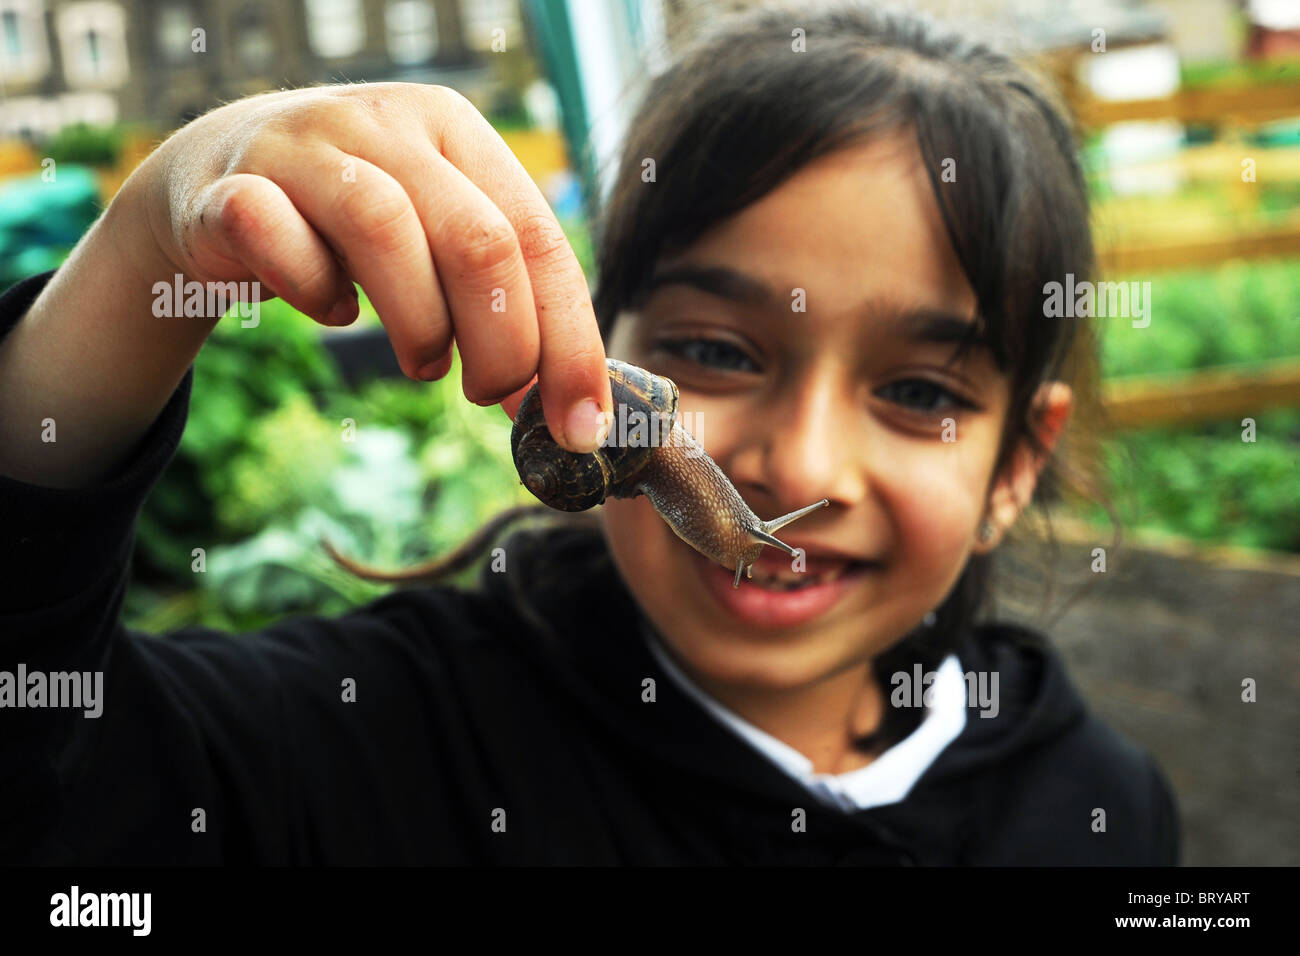 Ein Kind studiert eine Garten Schnecke anheben, als Teil der Gartenarbeit Erfahrung Besuch einer innerstädtischen Zuteilung, Bradford Stockfoto